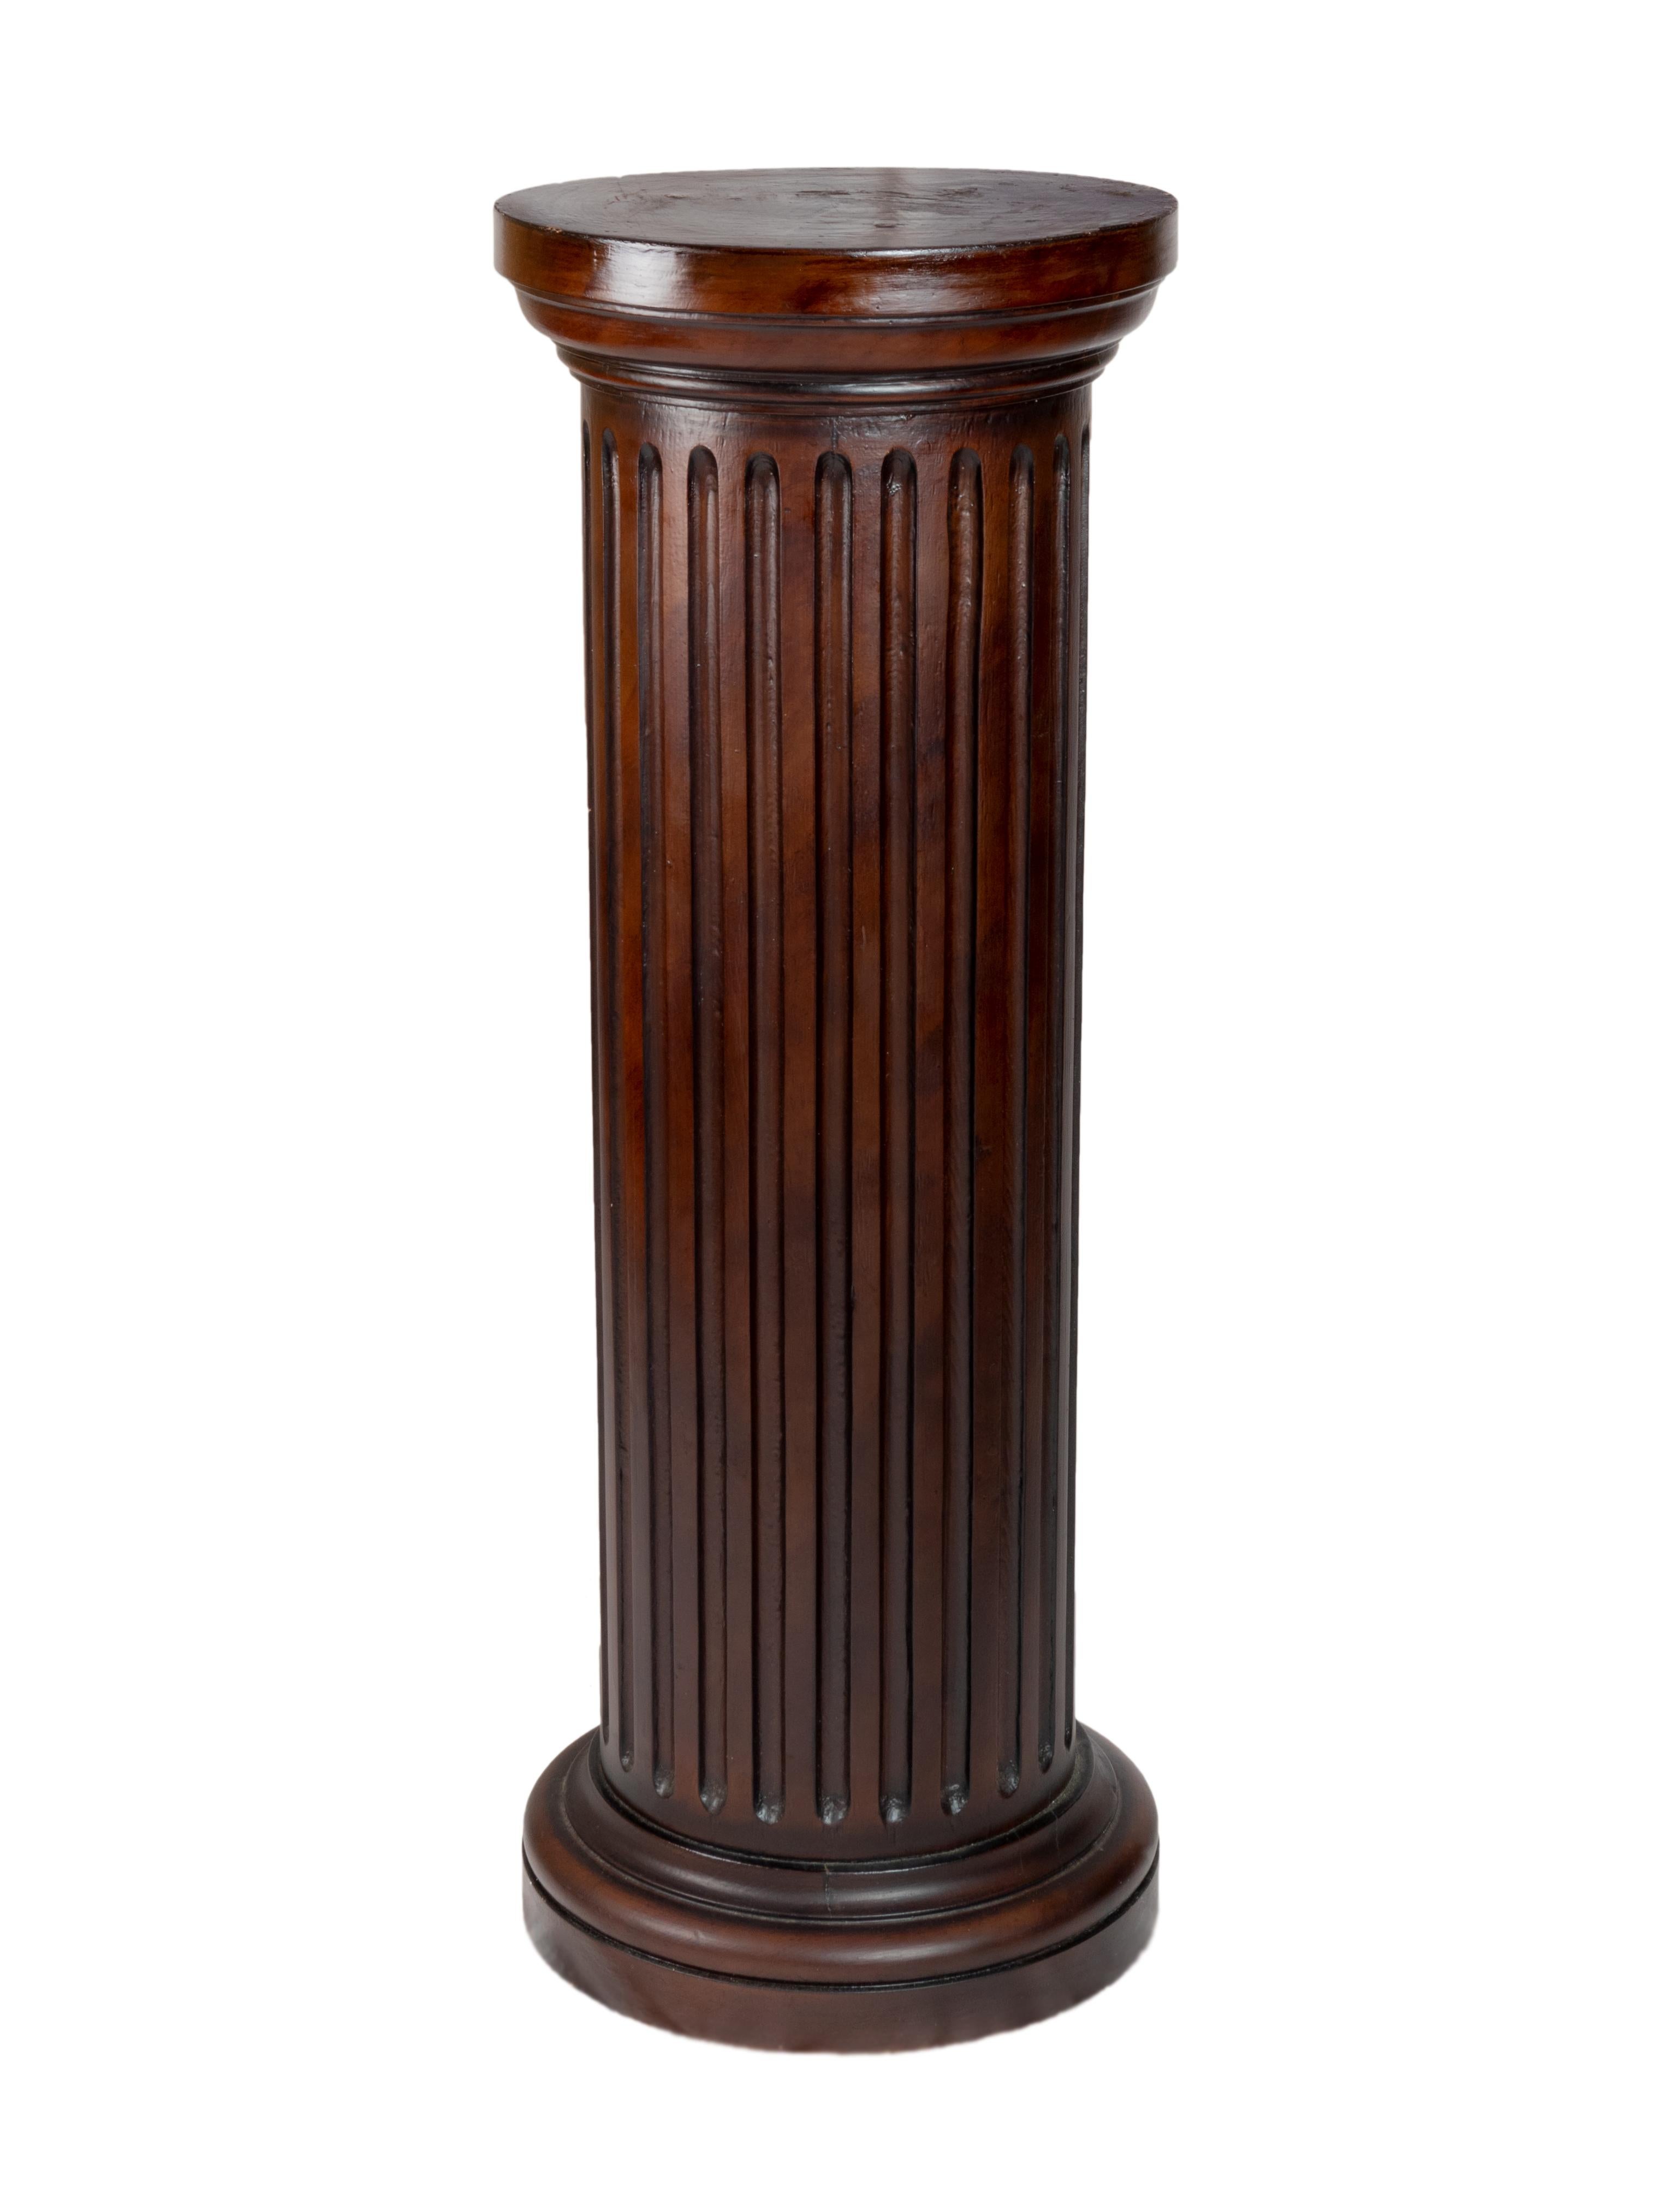 Ein klassisches Paar Holzsäulen in rotbrauner Farbe lackiert doucine Finish, kannelierte Details und horizontale Gesims, dorischen inspirierten Säulen.  

Höhe 39,52 Zoll (100,4 cm)
Durchmesser 14,76 Zoll (37,5 cm)